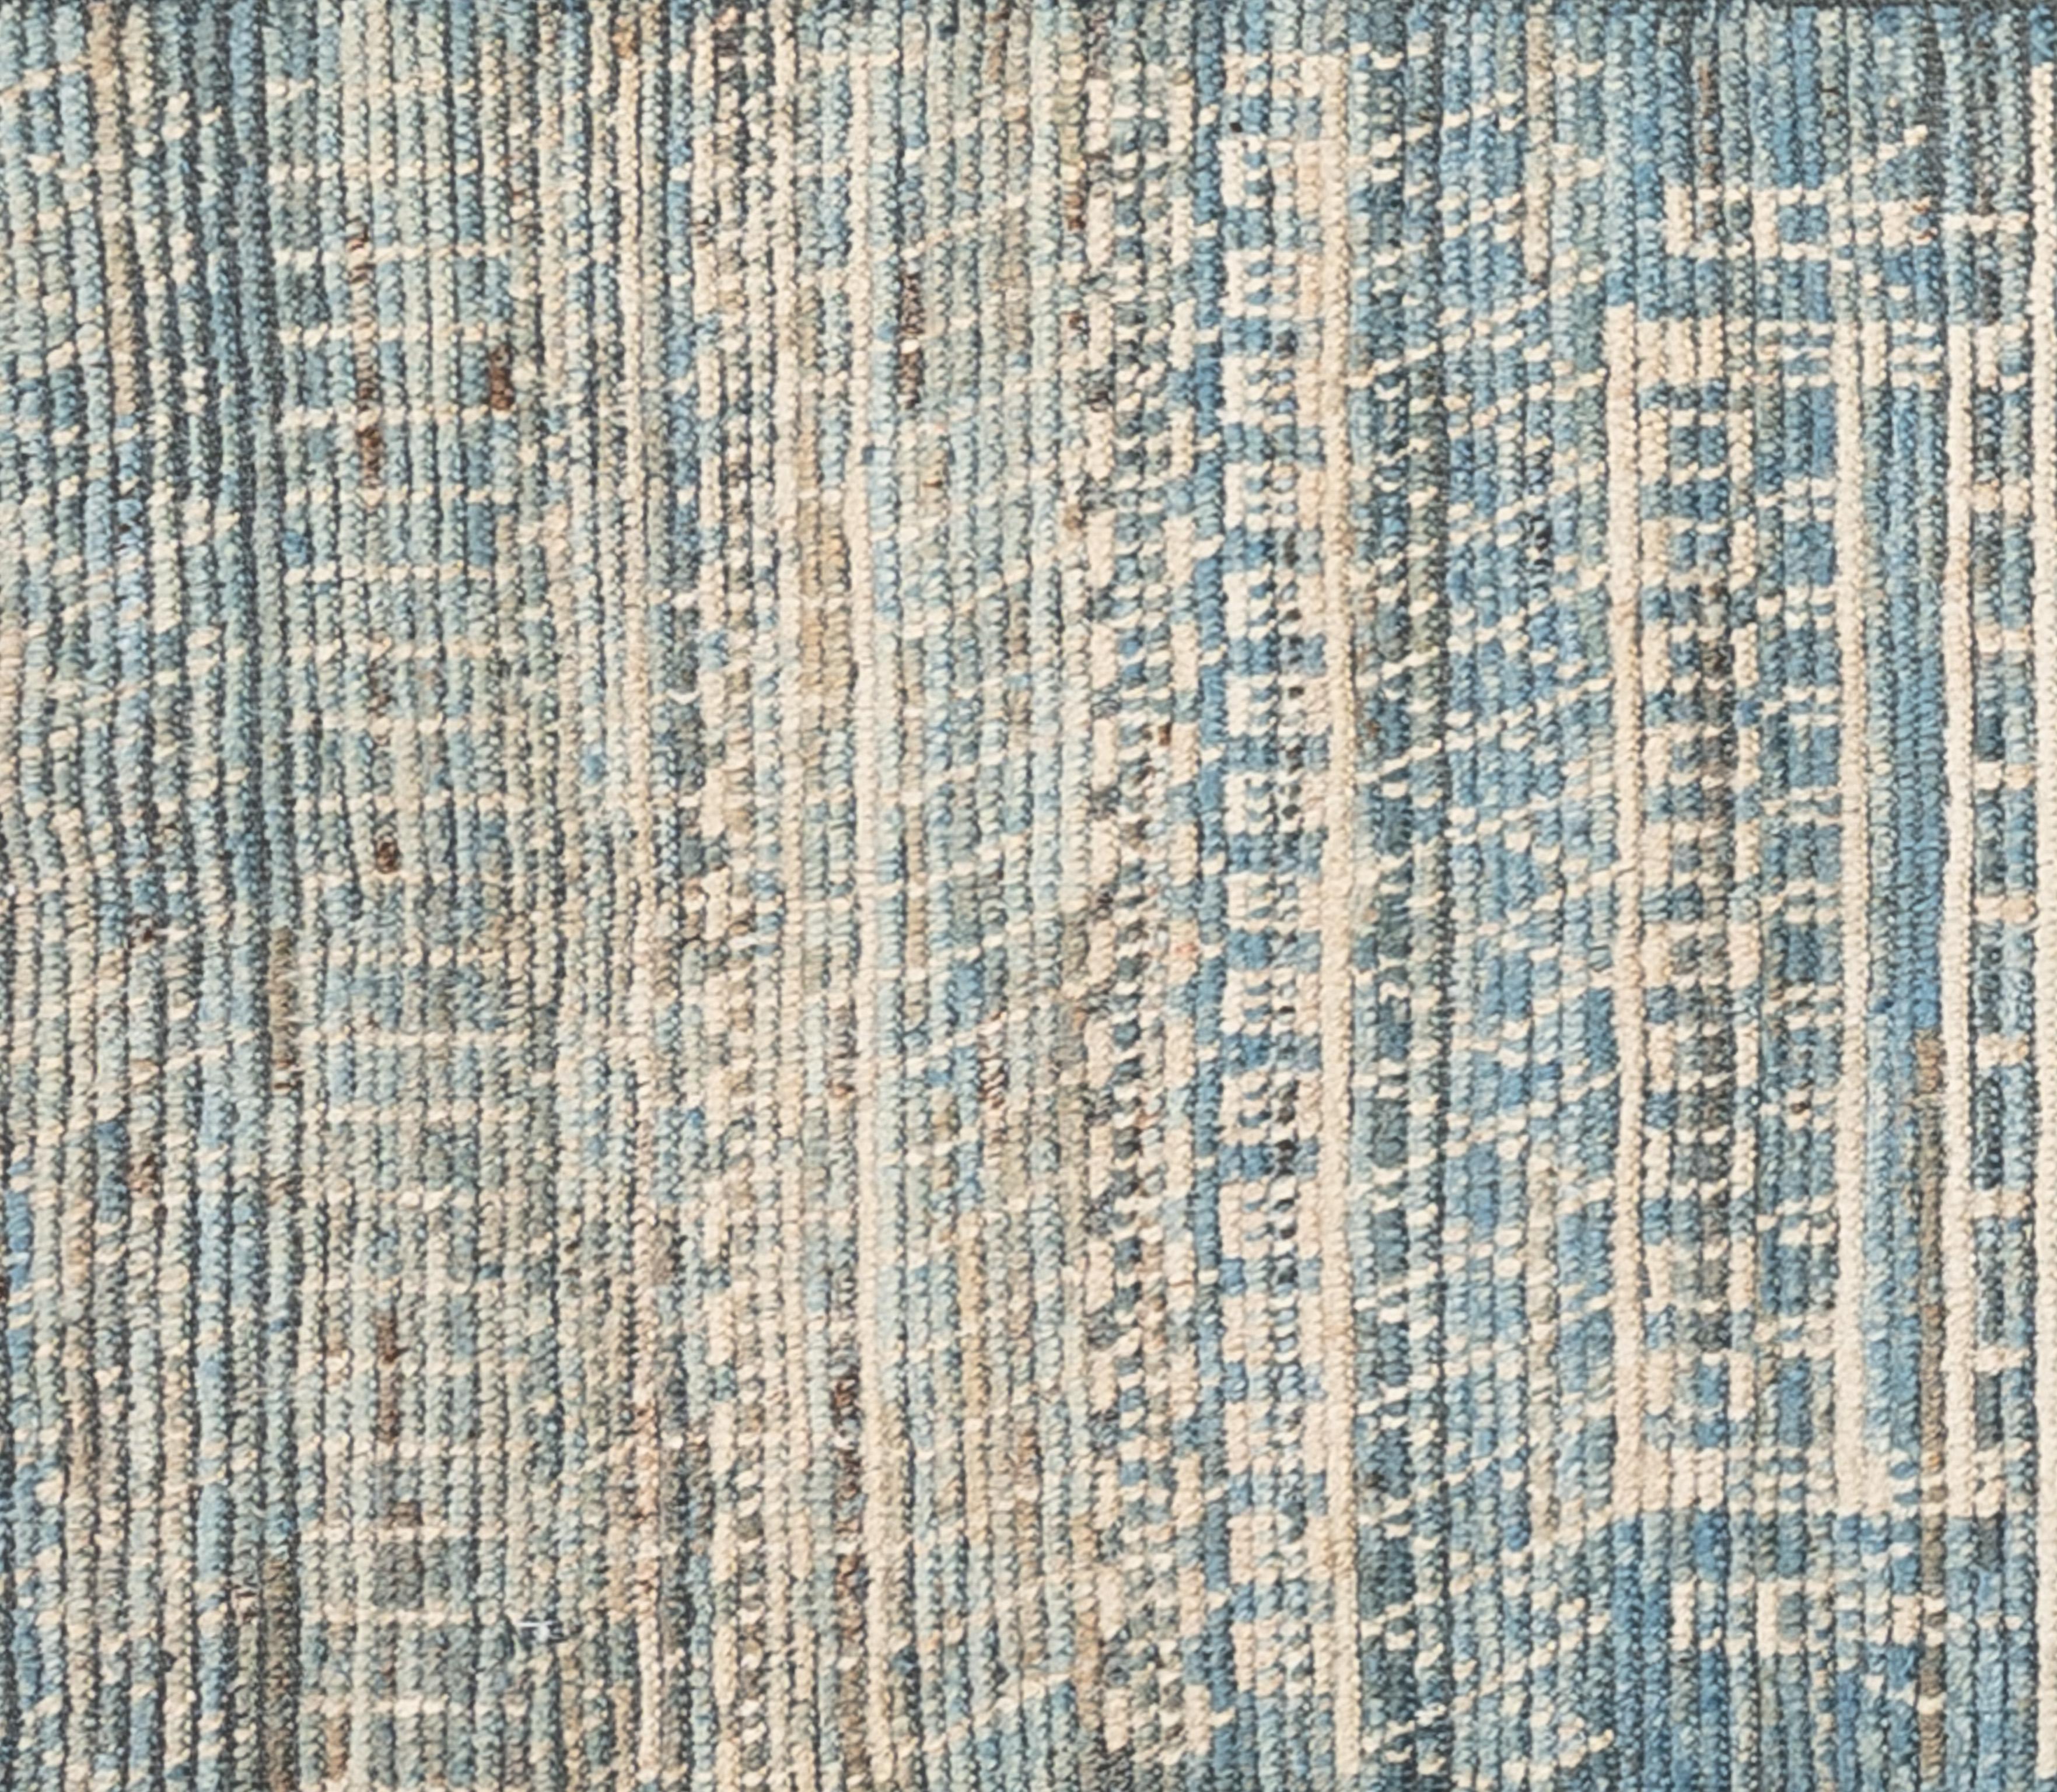 Handgewebt aus 100% handgesponnener Wolle in den Bergen Afghanistans ist dieser wunderschöne, natürlich gefärbte marokkanische Teppich ein echtes Unikat. Marokkanische Teppiche sind meist schlicht und passen perfekt zu Ihrer Einrichtung. Von